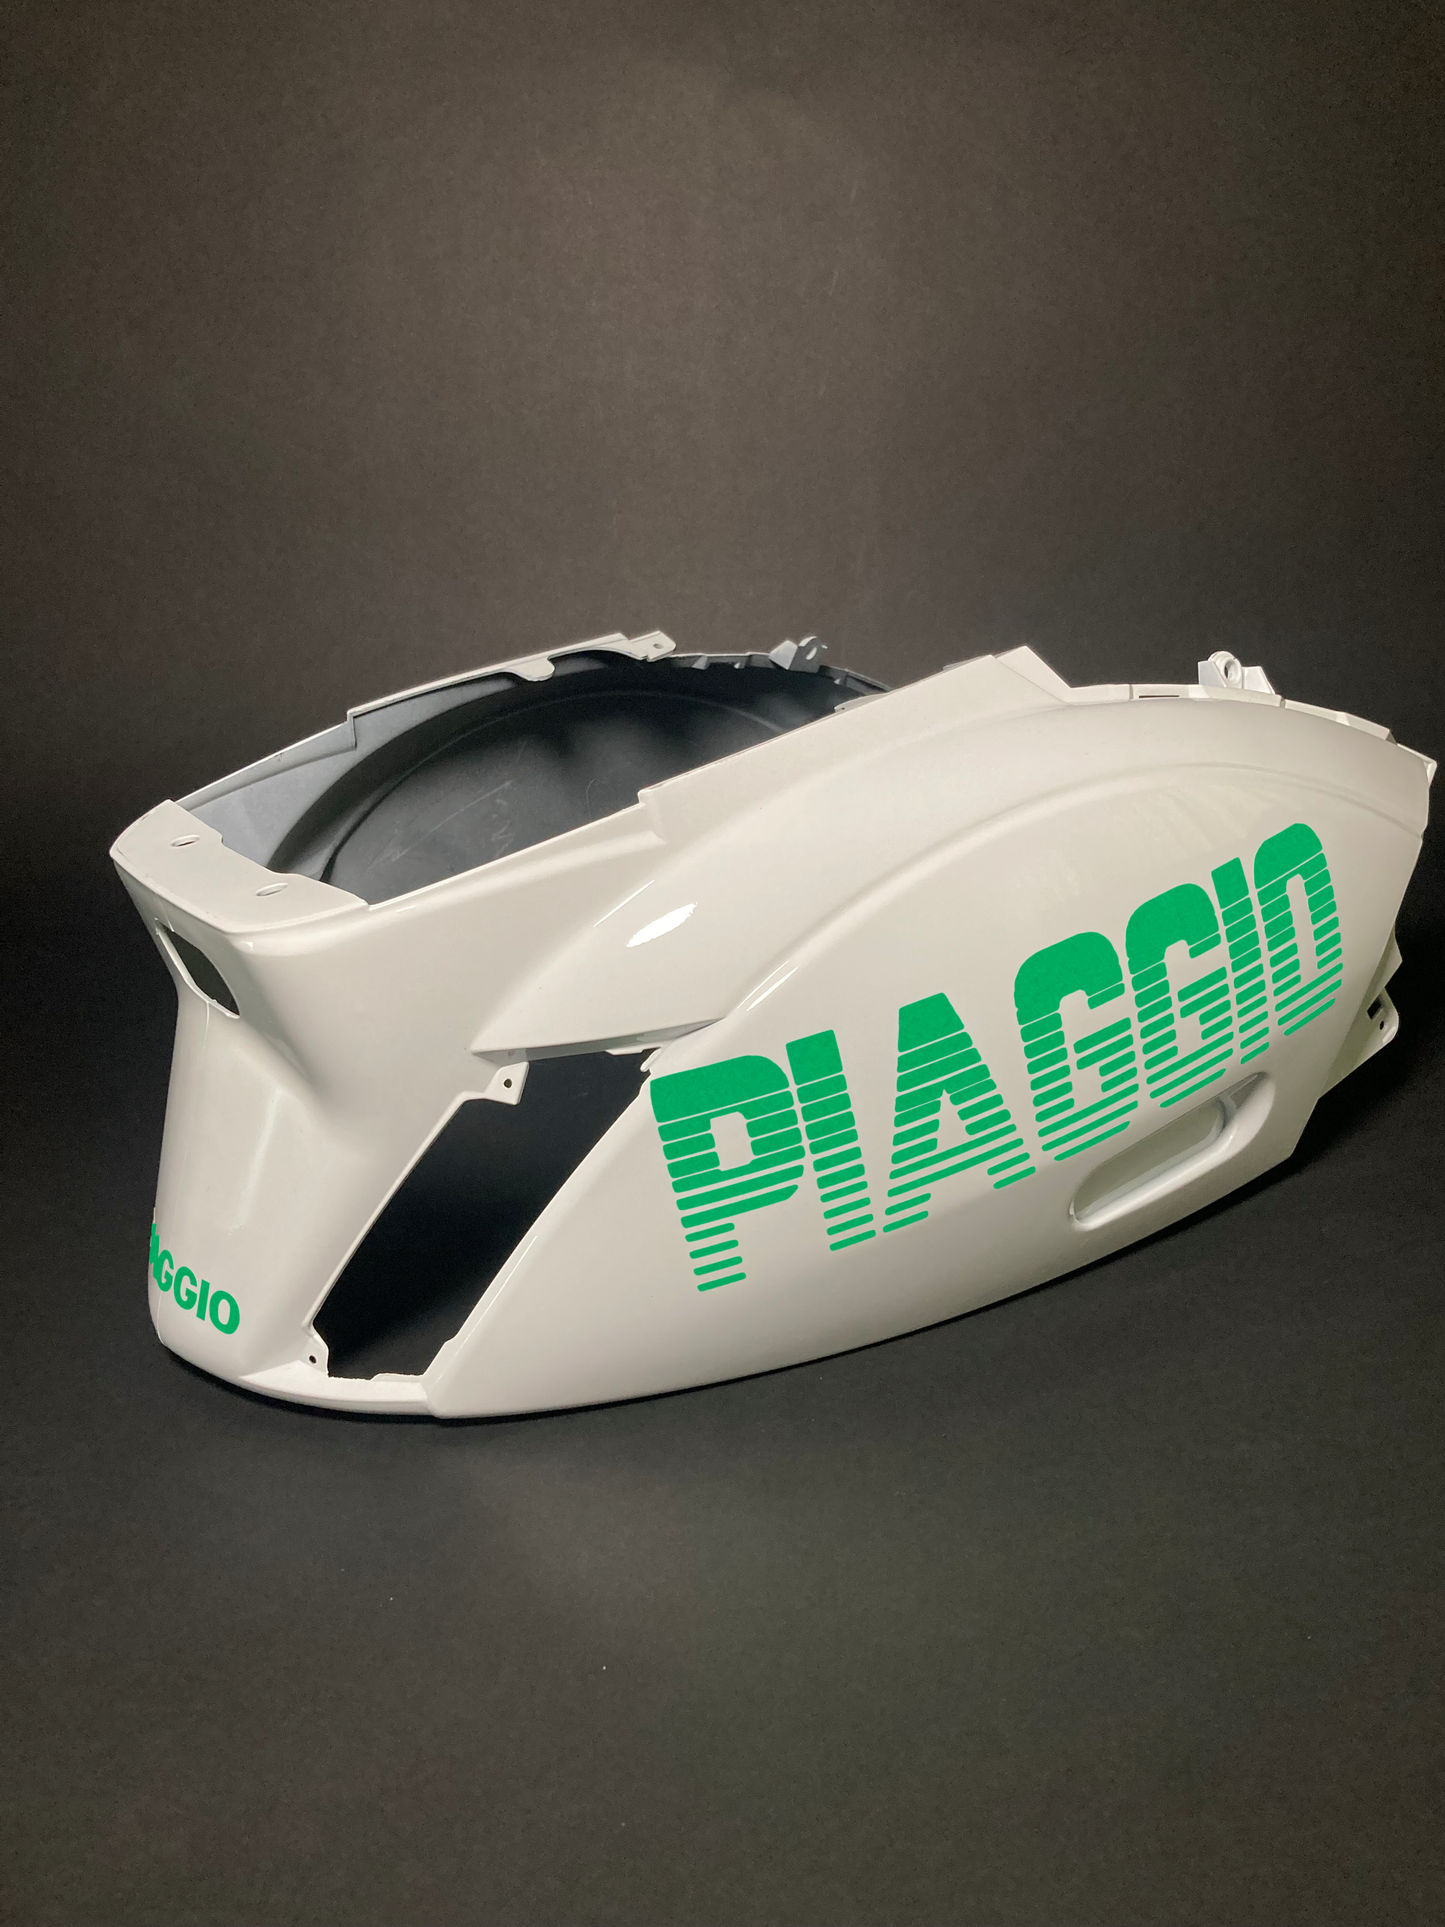 Reißverschluss Piaggio | Grün